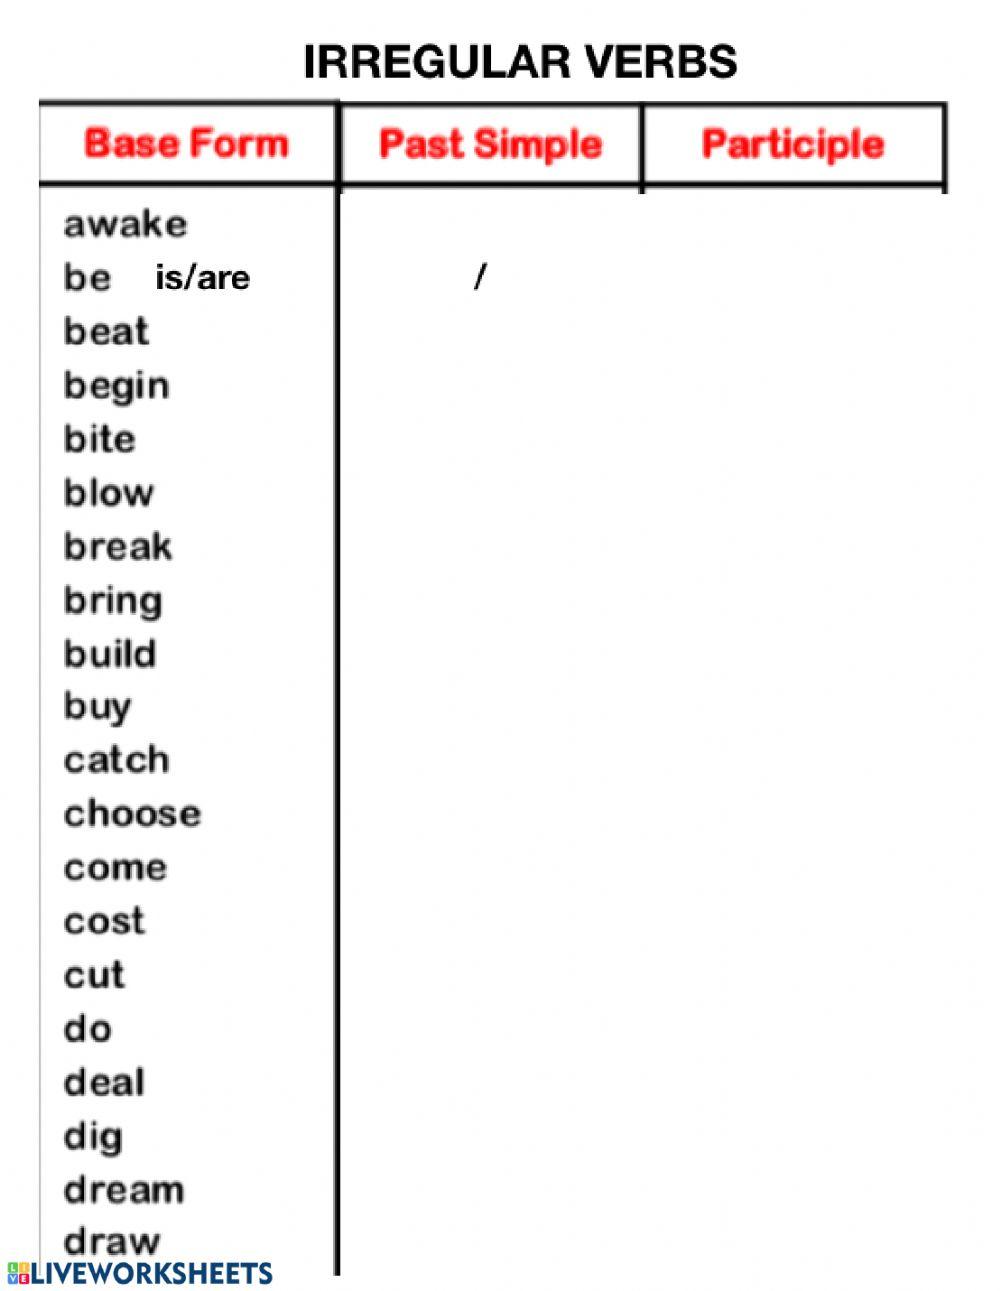 Irregular verbs 1-20